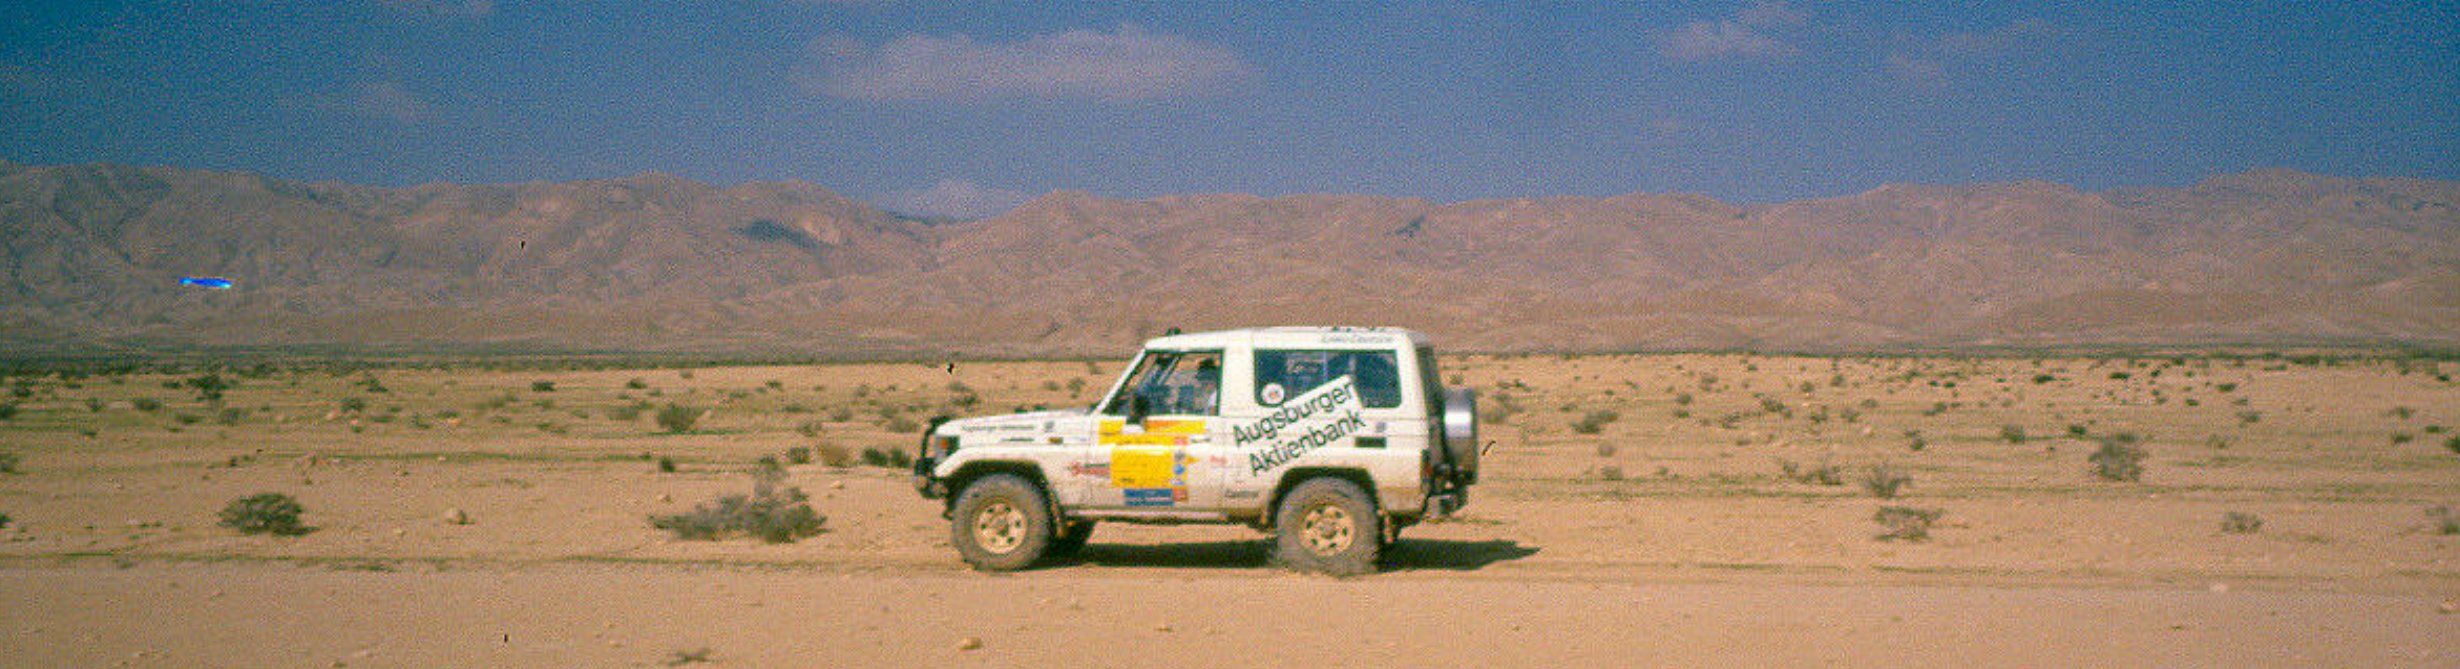 Mit dem 4x4 Reismobil in der Sahara Wüste